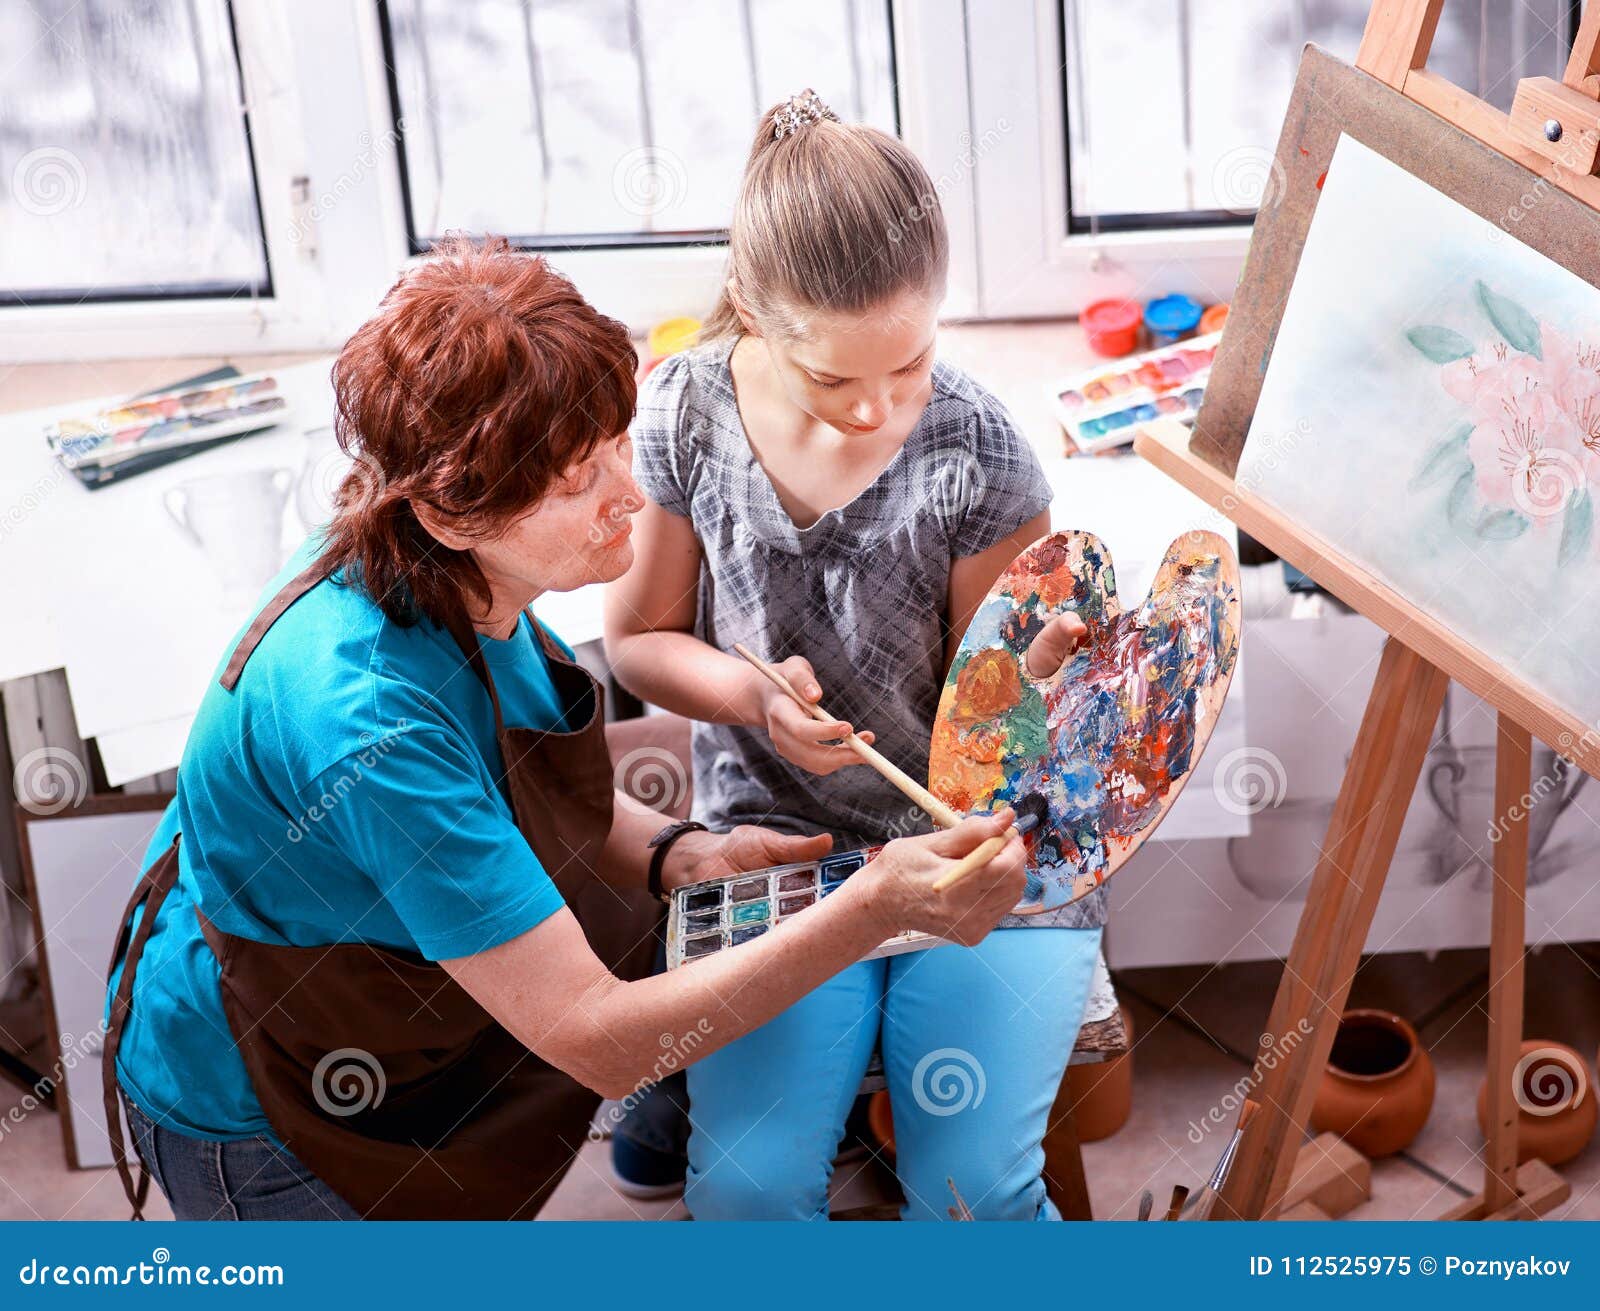 Caballete De La Pintura Del Artista En Estudio Abuela Y Niños Auténticos  Imagen de archivo - Imagen de muchacha, paleta: 112525975